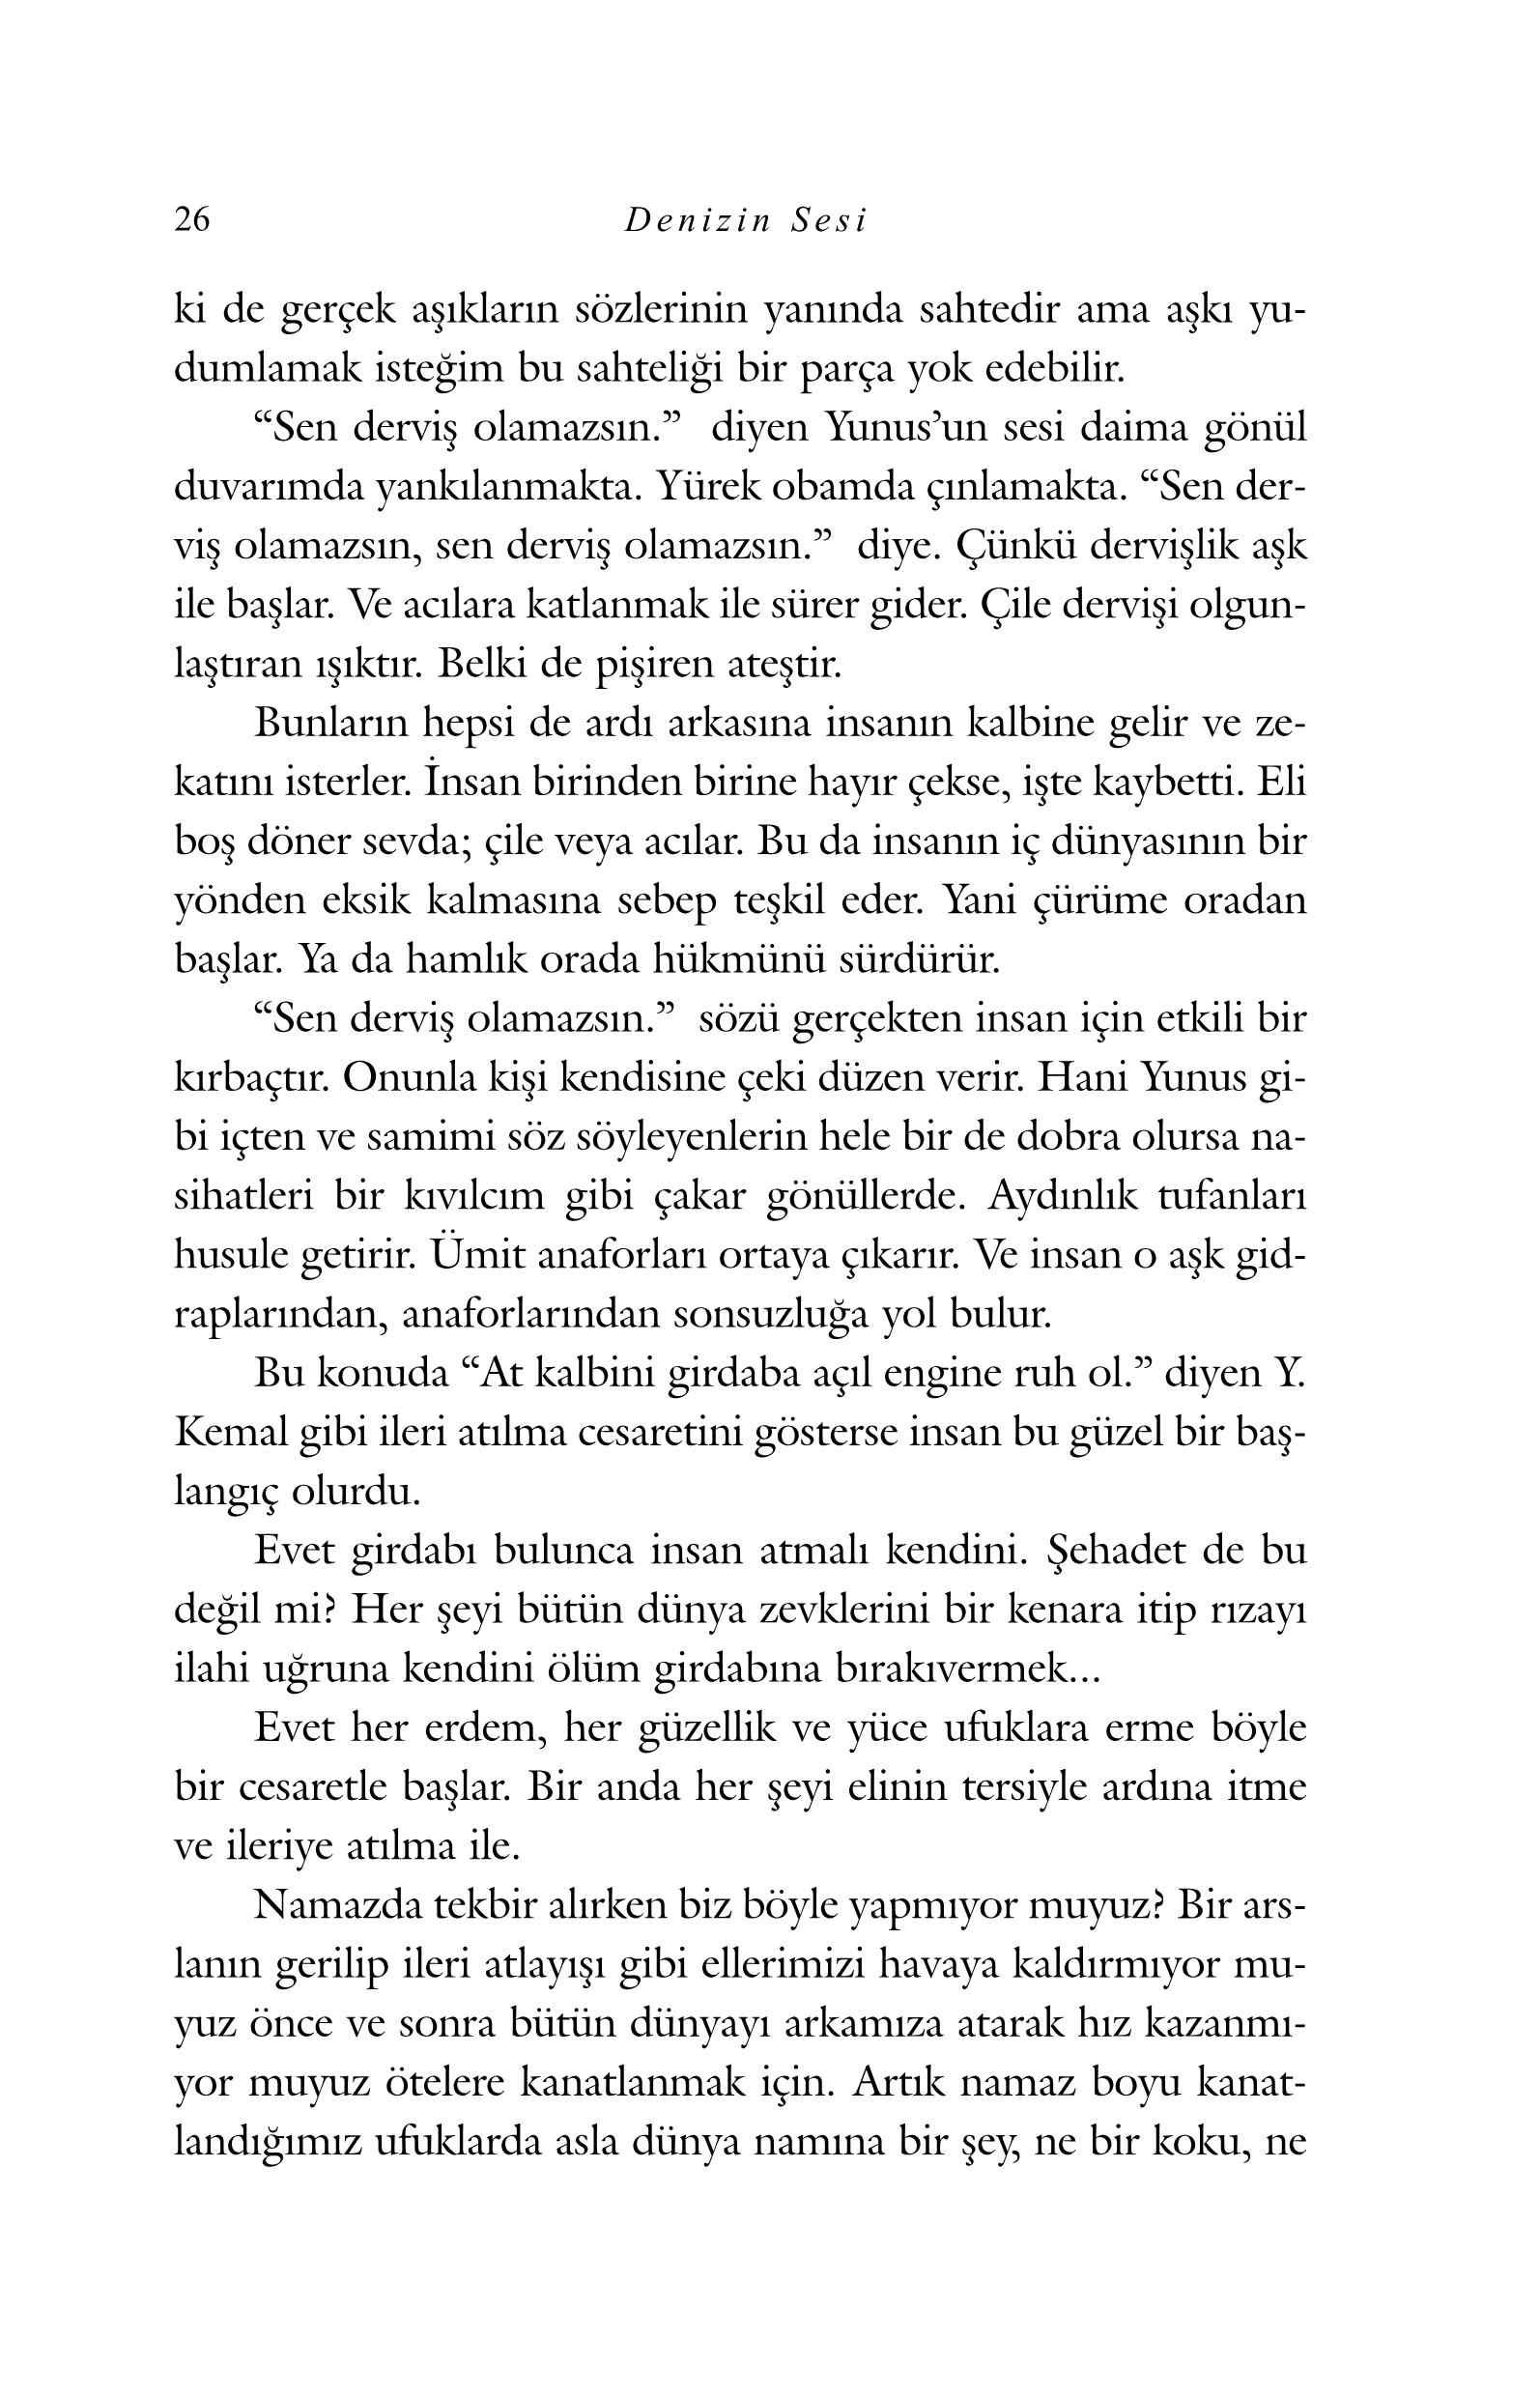 Mehmet Erdogan - Denizin sesi - KaynakYayinlari.Pdf, 134-Sayfa 